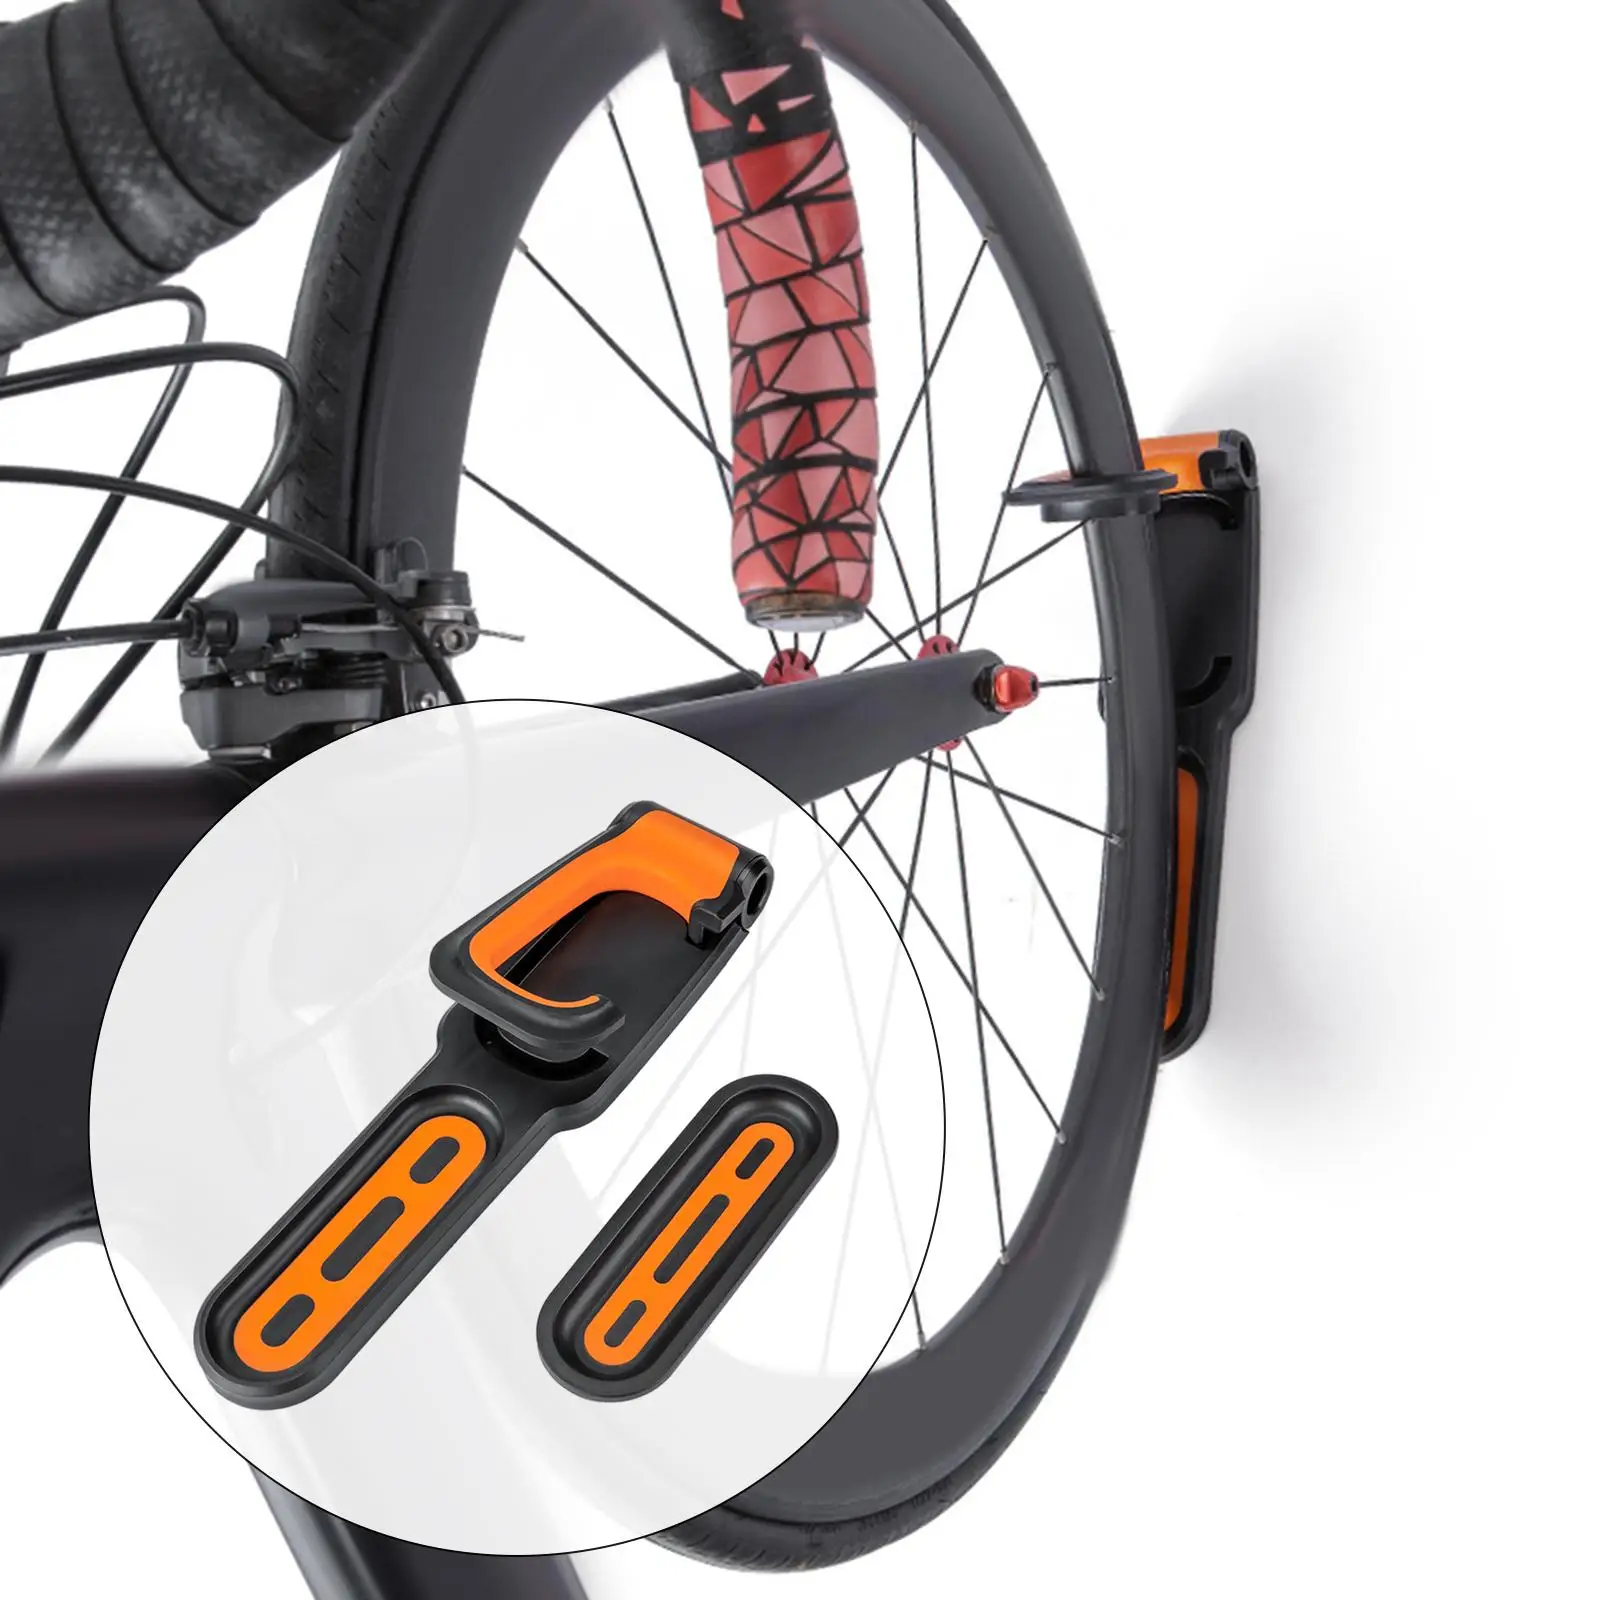   Mount Bike Rack for Garage Vertical Cycling Holder for Indoor